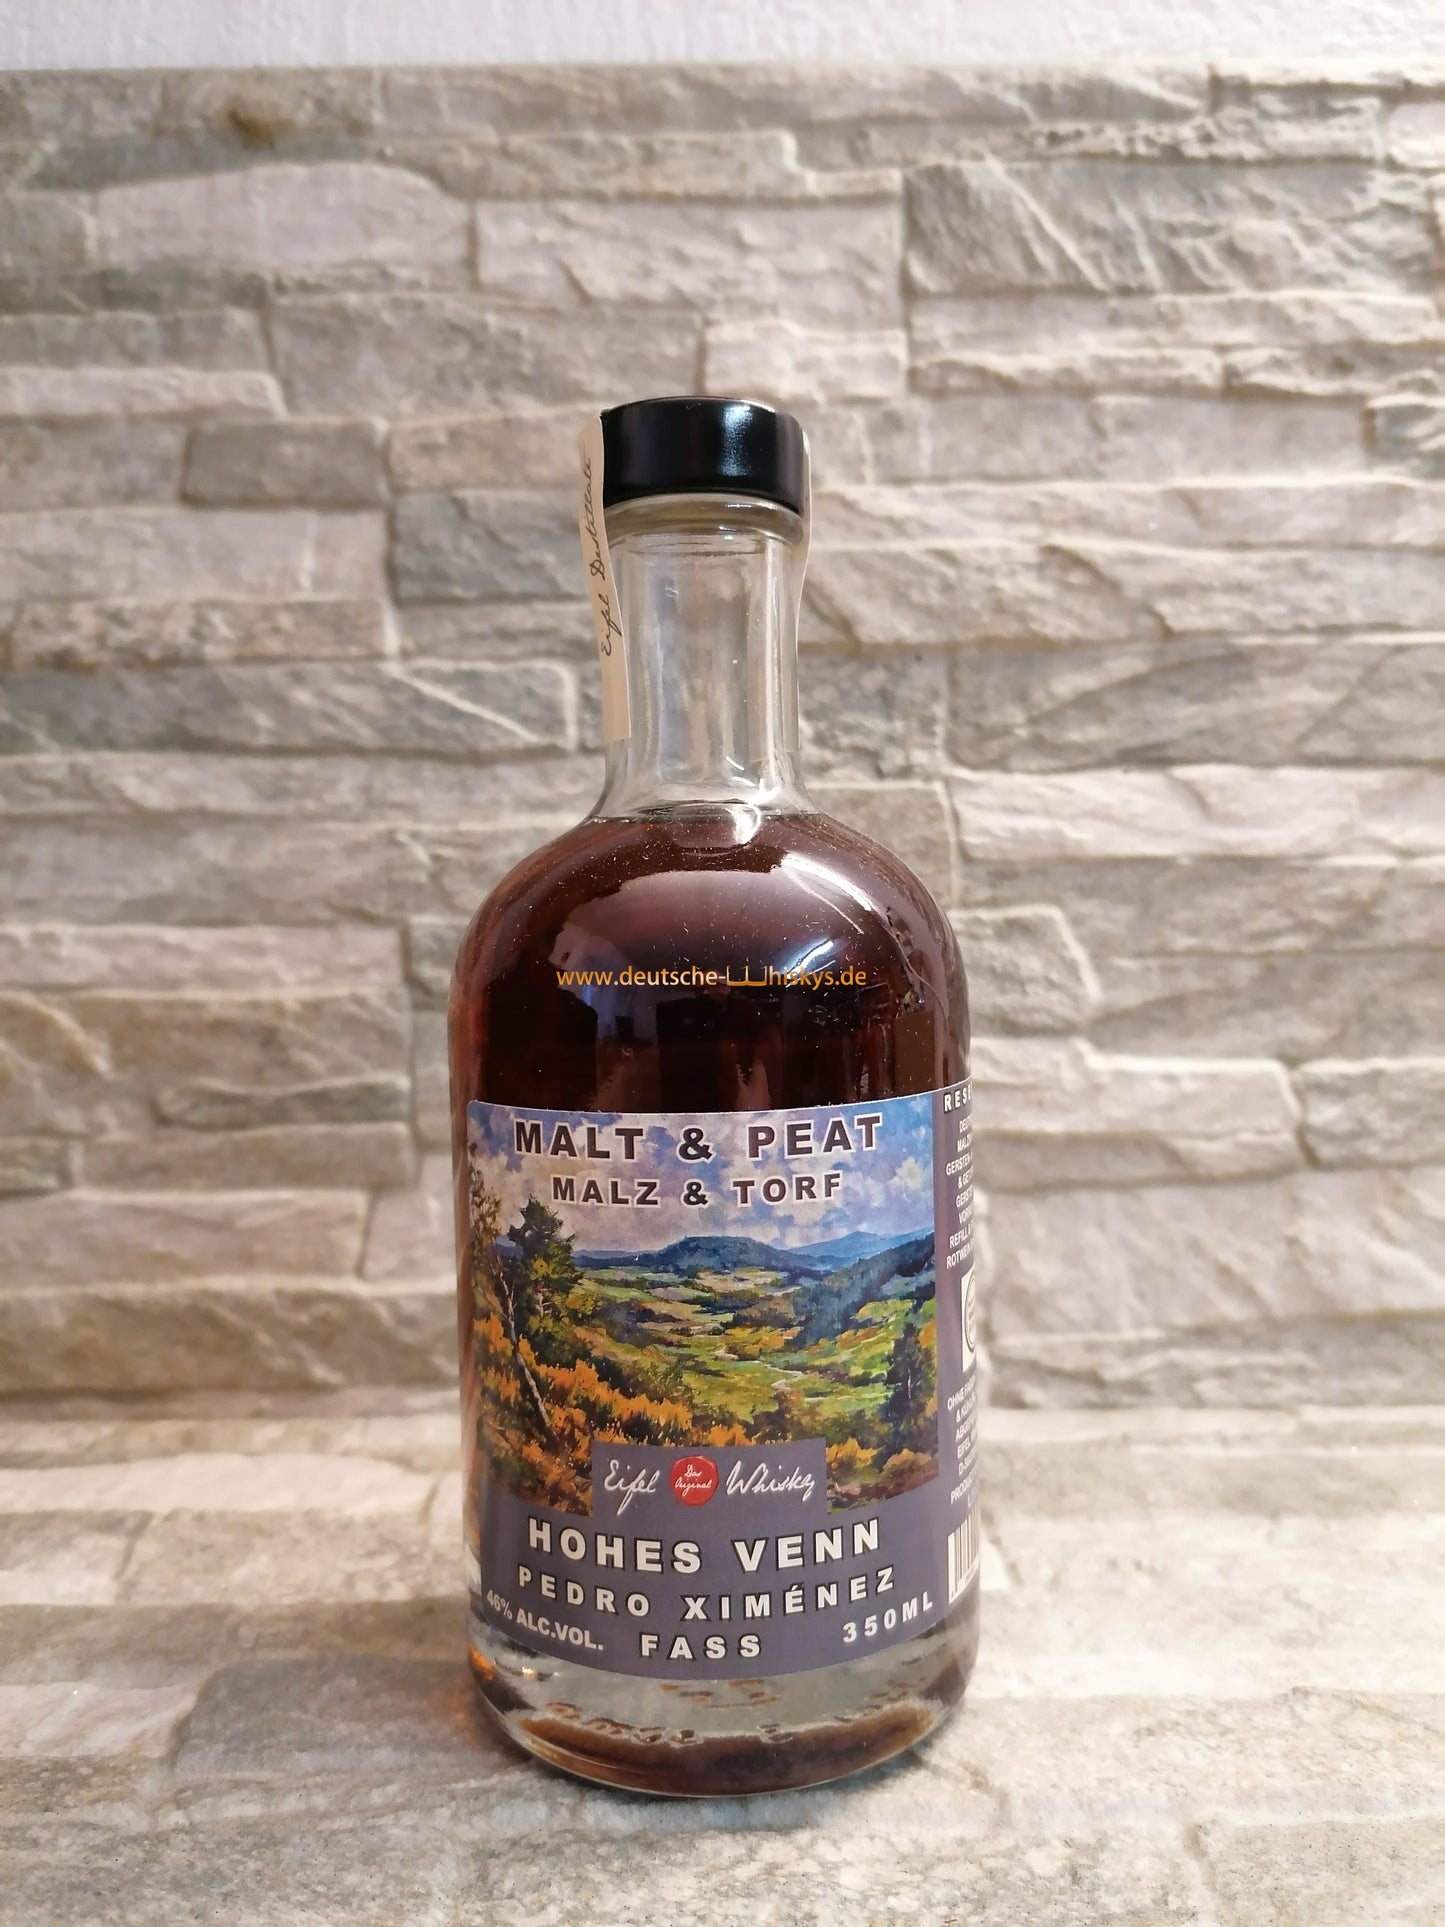 Eifel Whisky Malt & Peat Reserve "Hohes Venn" 48,5%vol., 0,35l